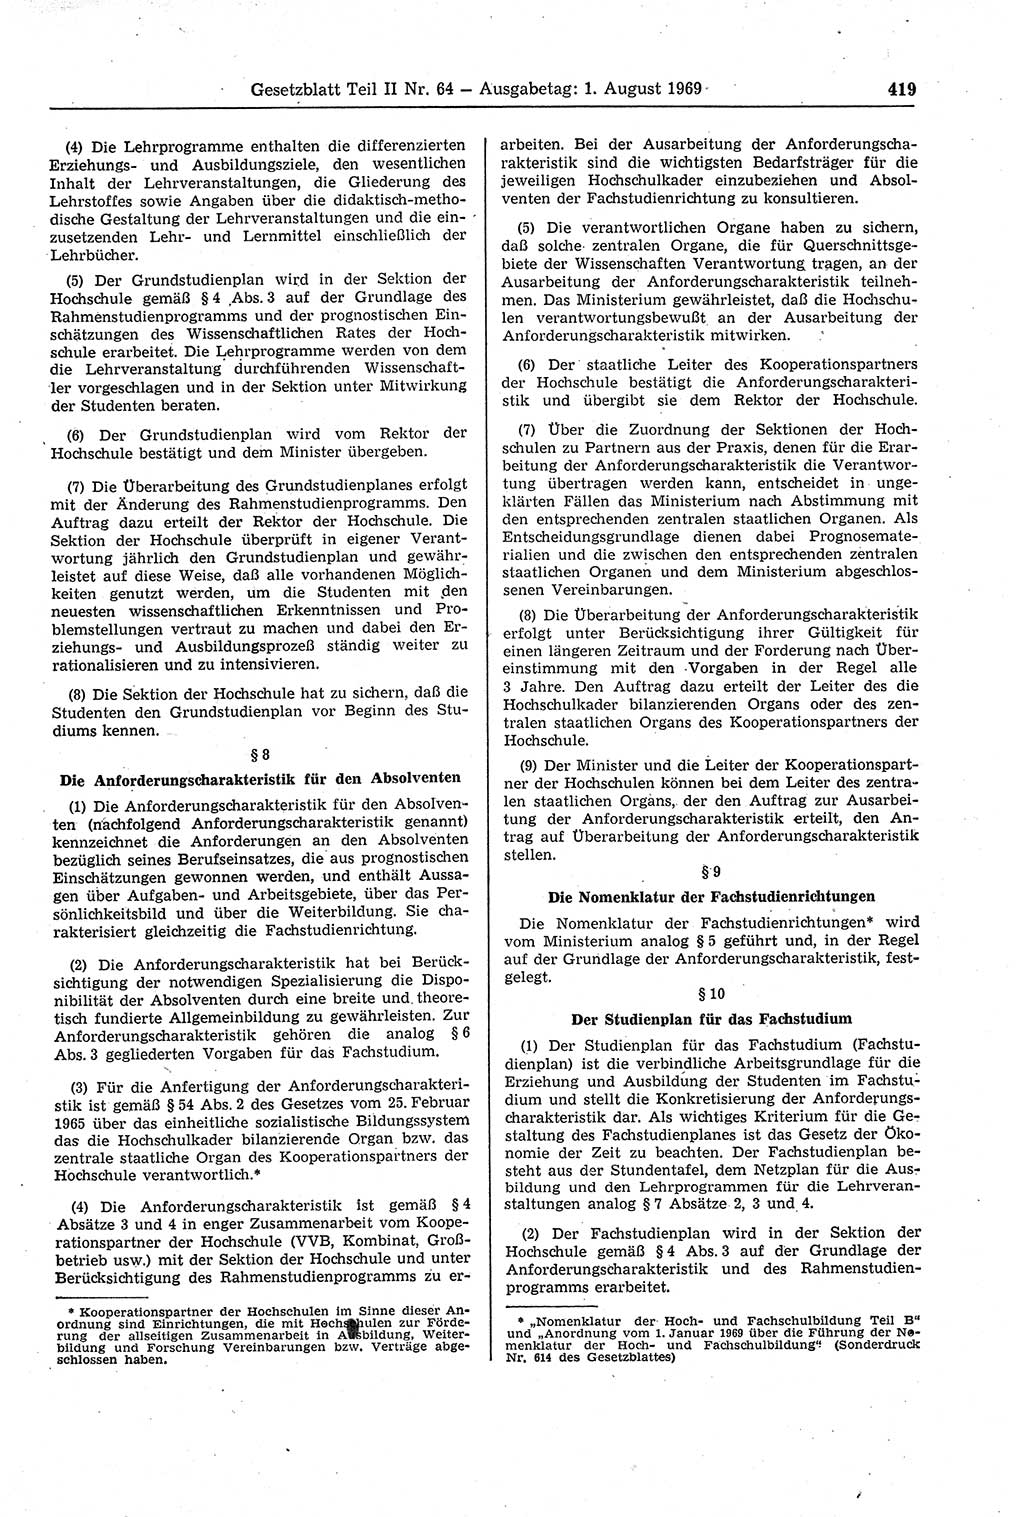 Gesetzblatt (GBl.) der Deutschen Demokratischen Republik (DDR) Teil ⅠⅠ 1969, Seite 419 (GBl. DDR ⅠⅠ 1969, S. 419)